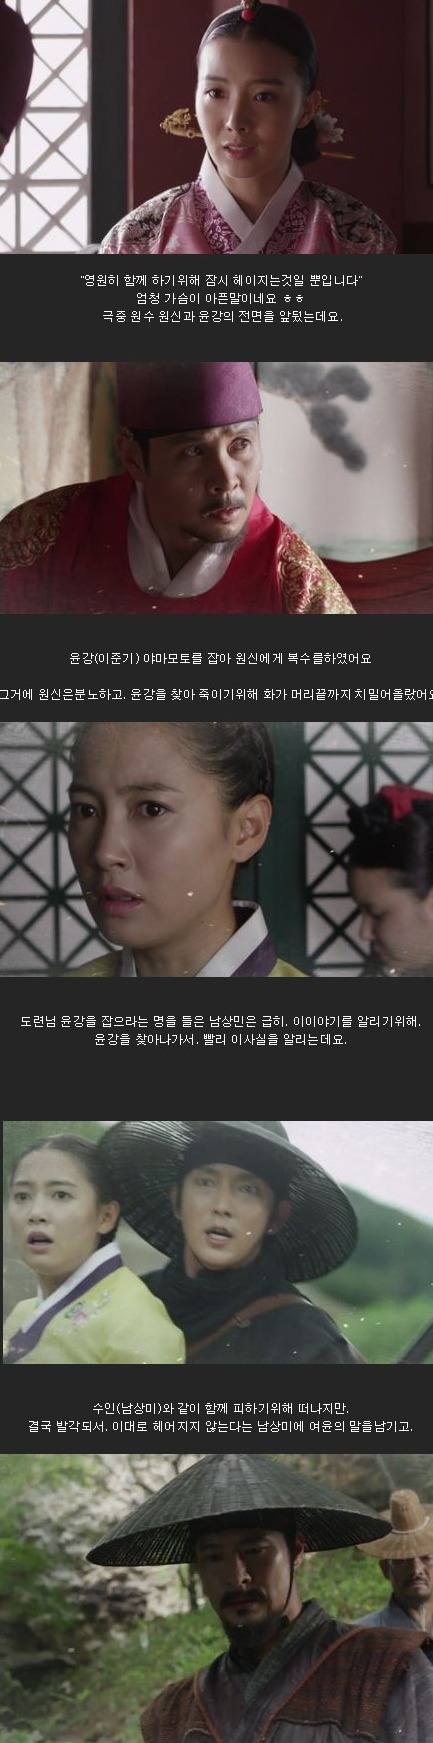 episode 19 captures for the Korean drama 'The Joseon Shooter'